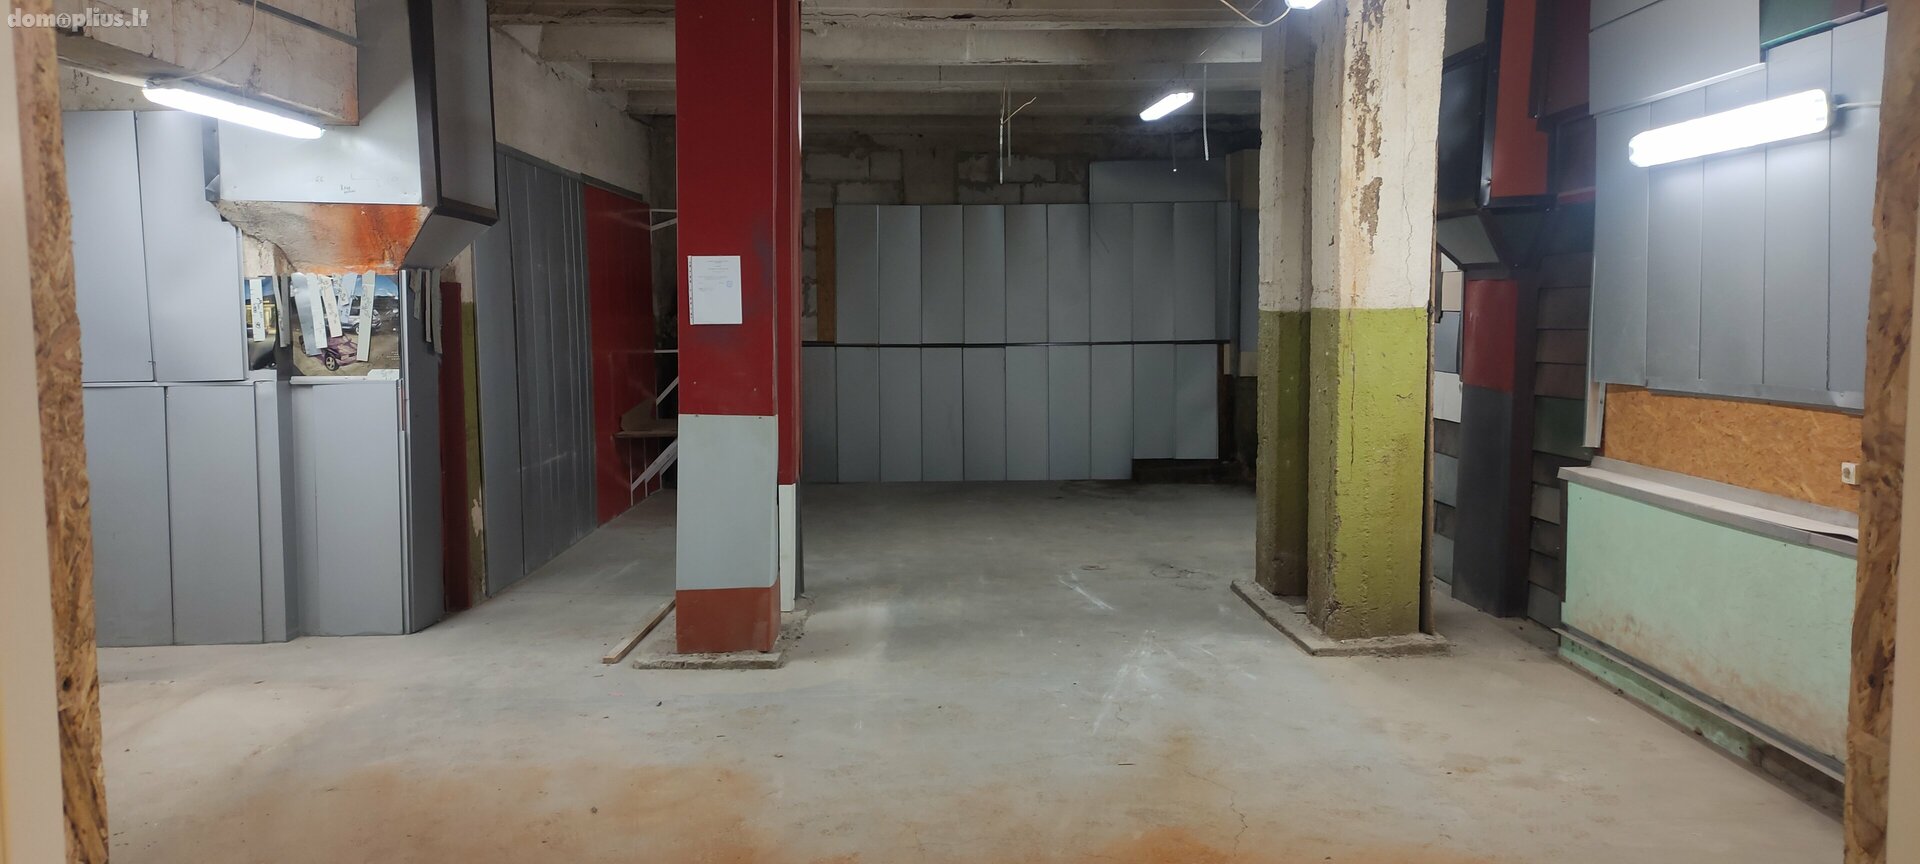 Office / Storage / Alimentation Premises for rent Vilniuje, Šnipiškėse, Žalgirio g.